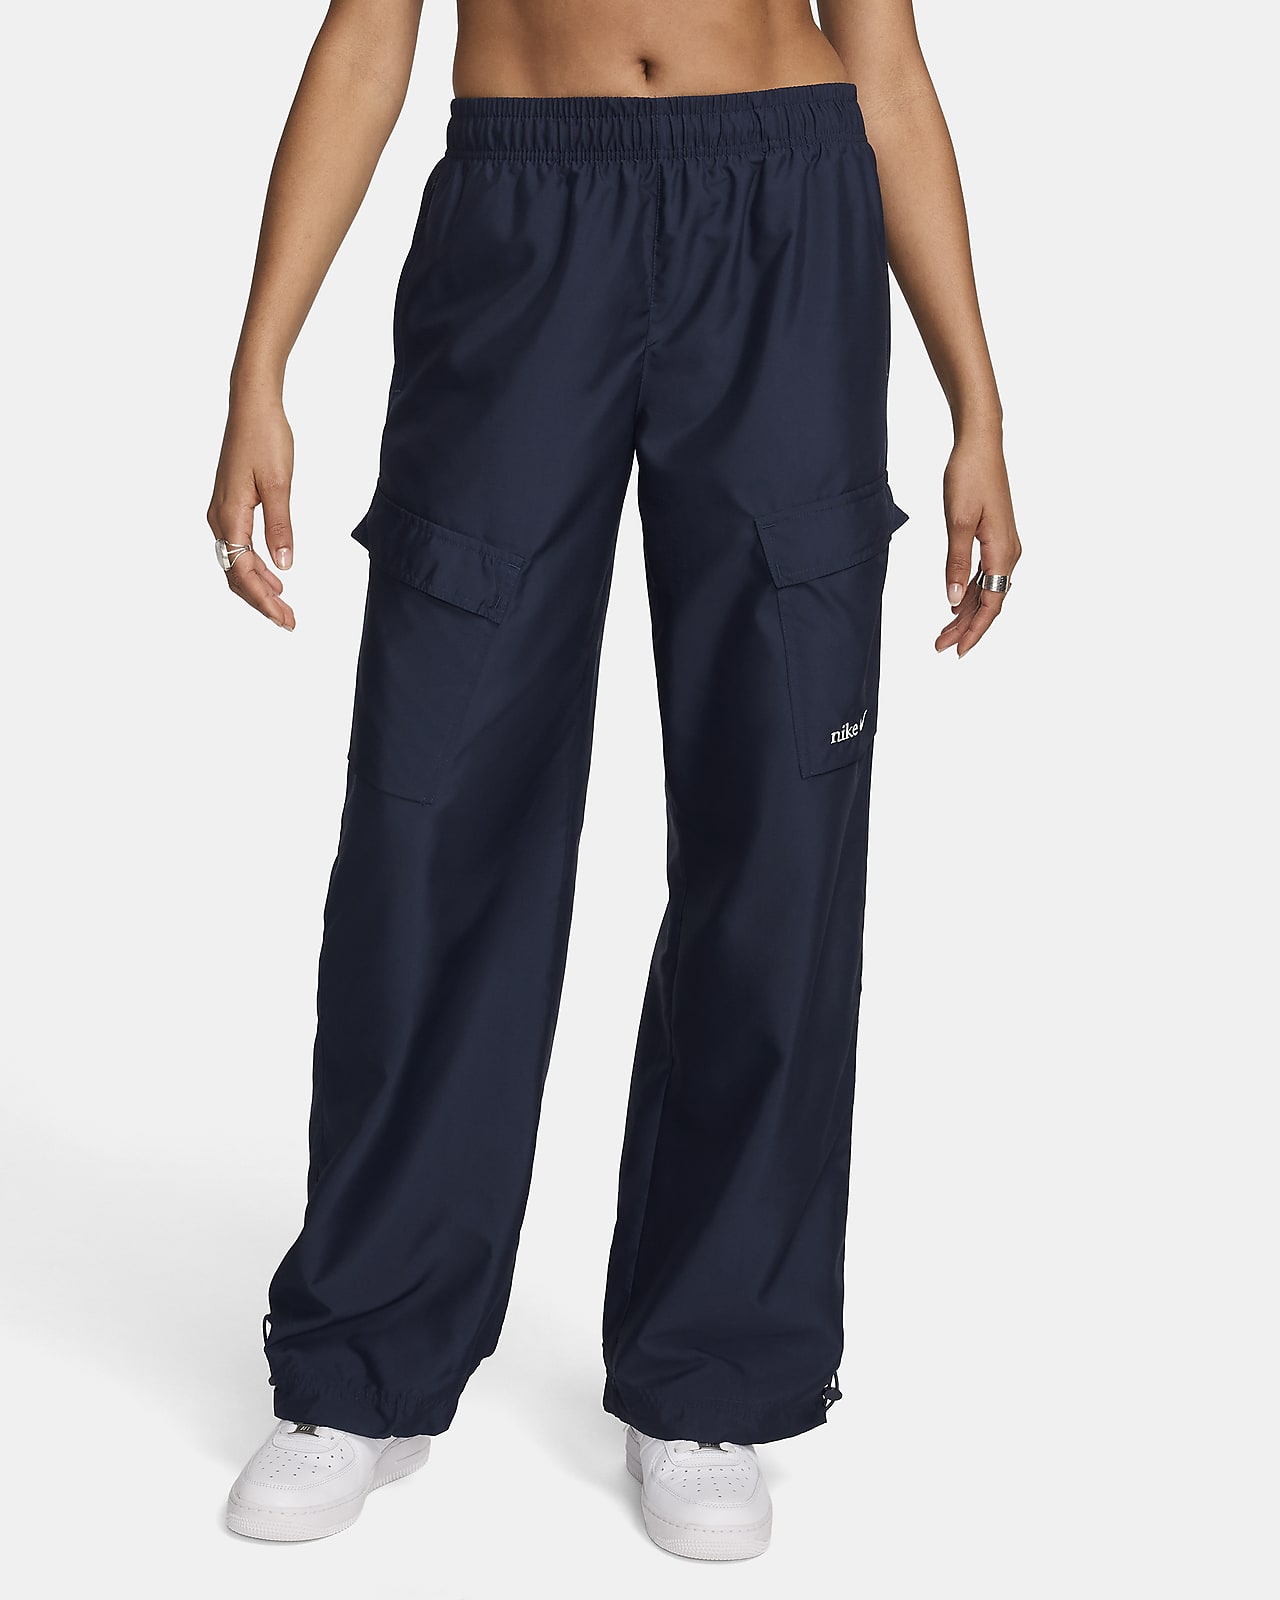 Nike Sportswear Women's Woven Cargo Trousers. Nike HR